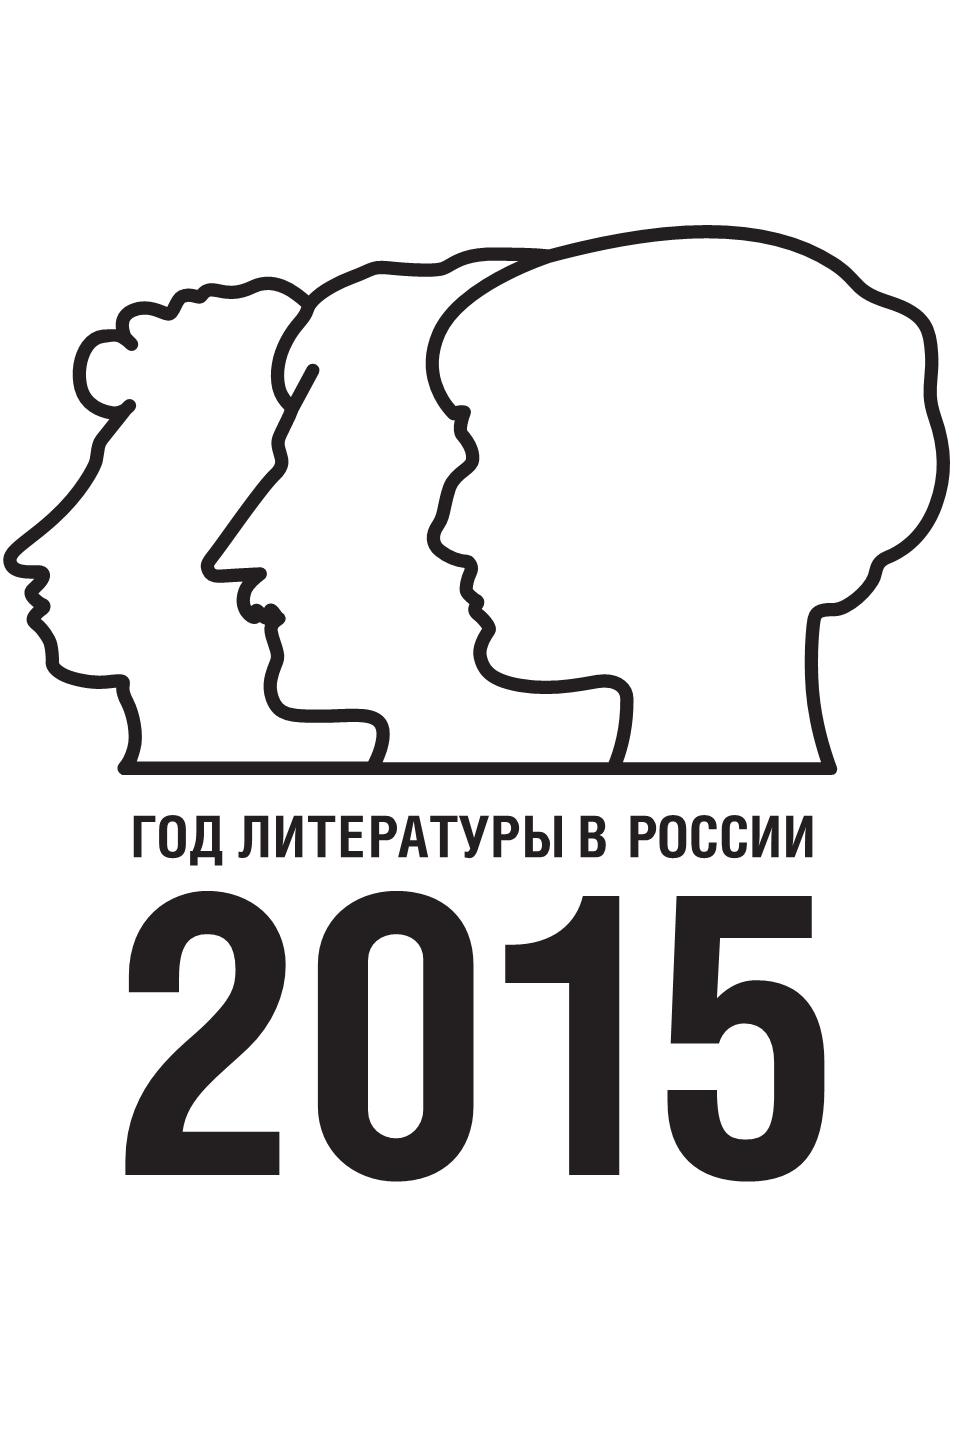 2015 год объявили годом. Год литературы в России. Год литературы в России 2015. Год литературы логотип.